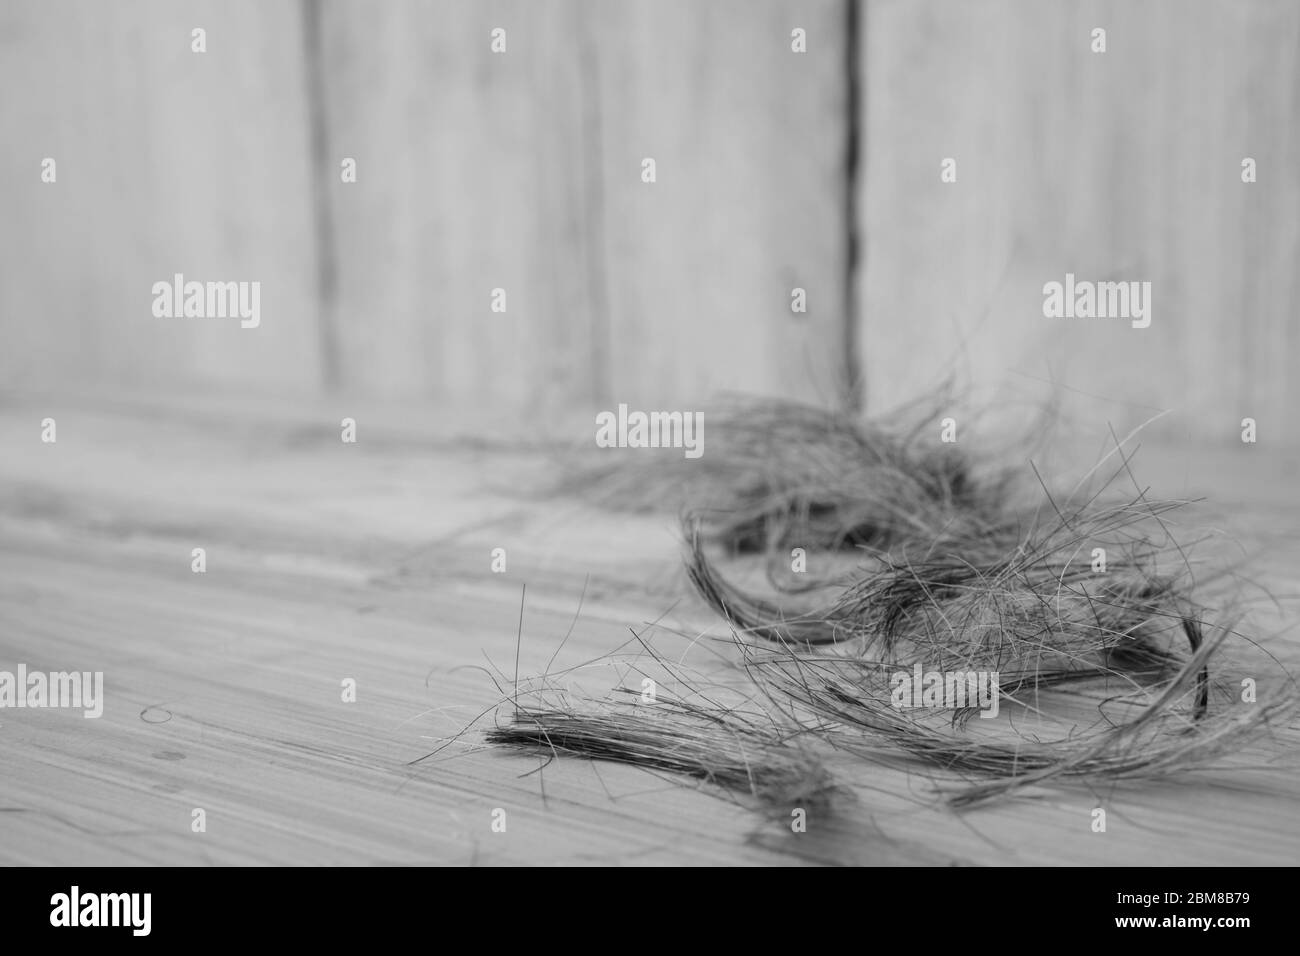 Ciuffi di capelli umani, che mostrano piccoli grappoli della proteina di taglio visualizzati su assi di legno. Foto Stock